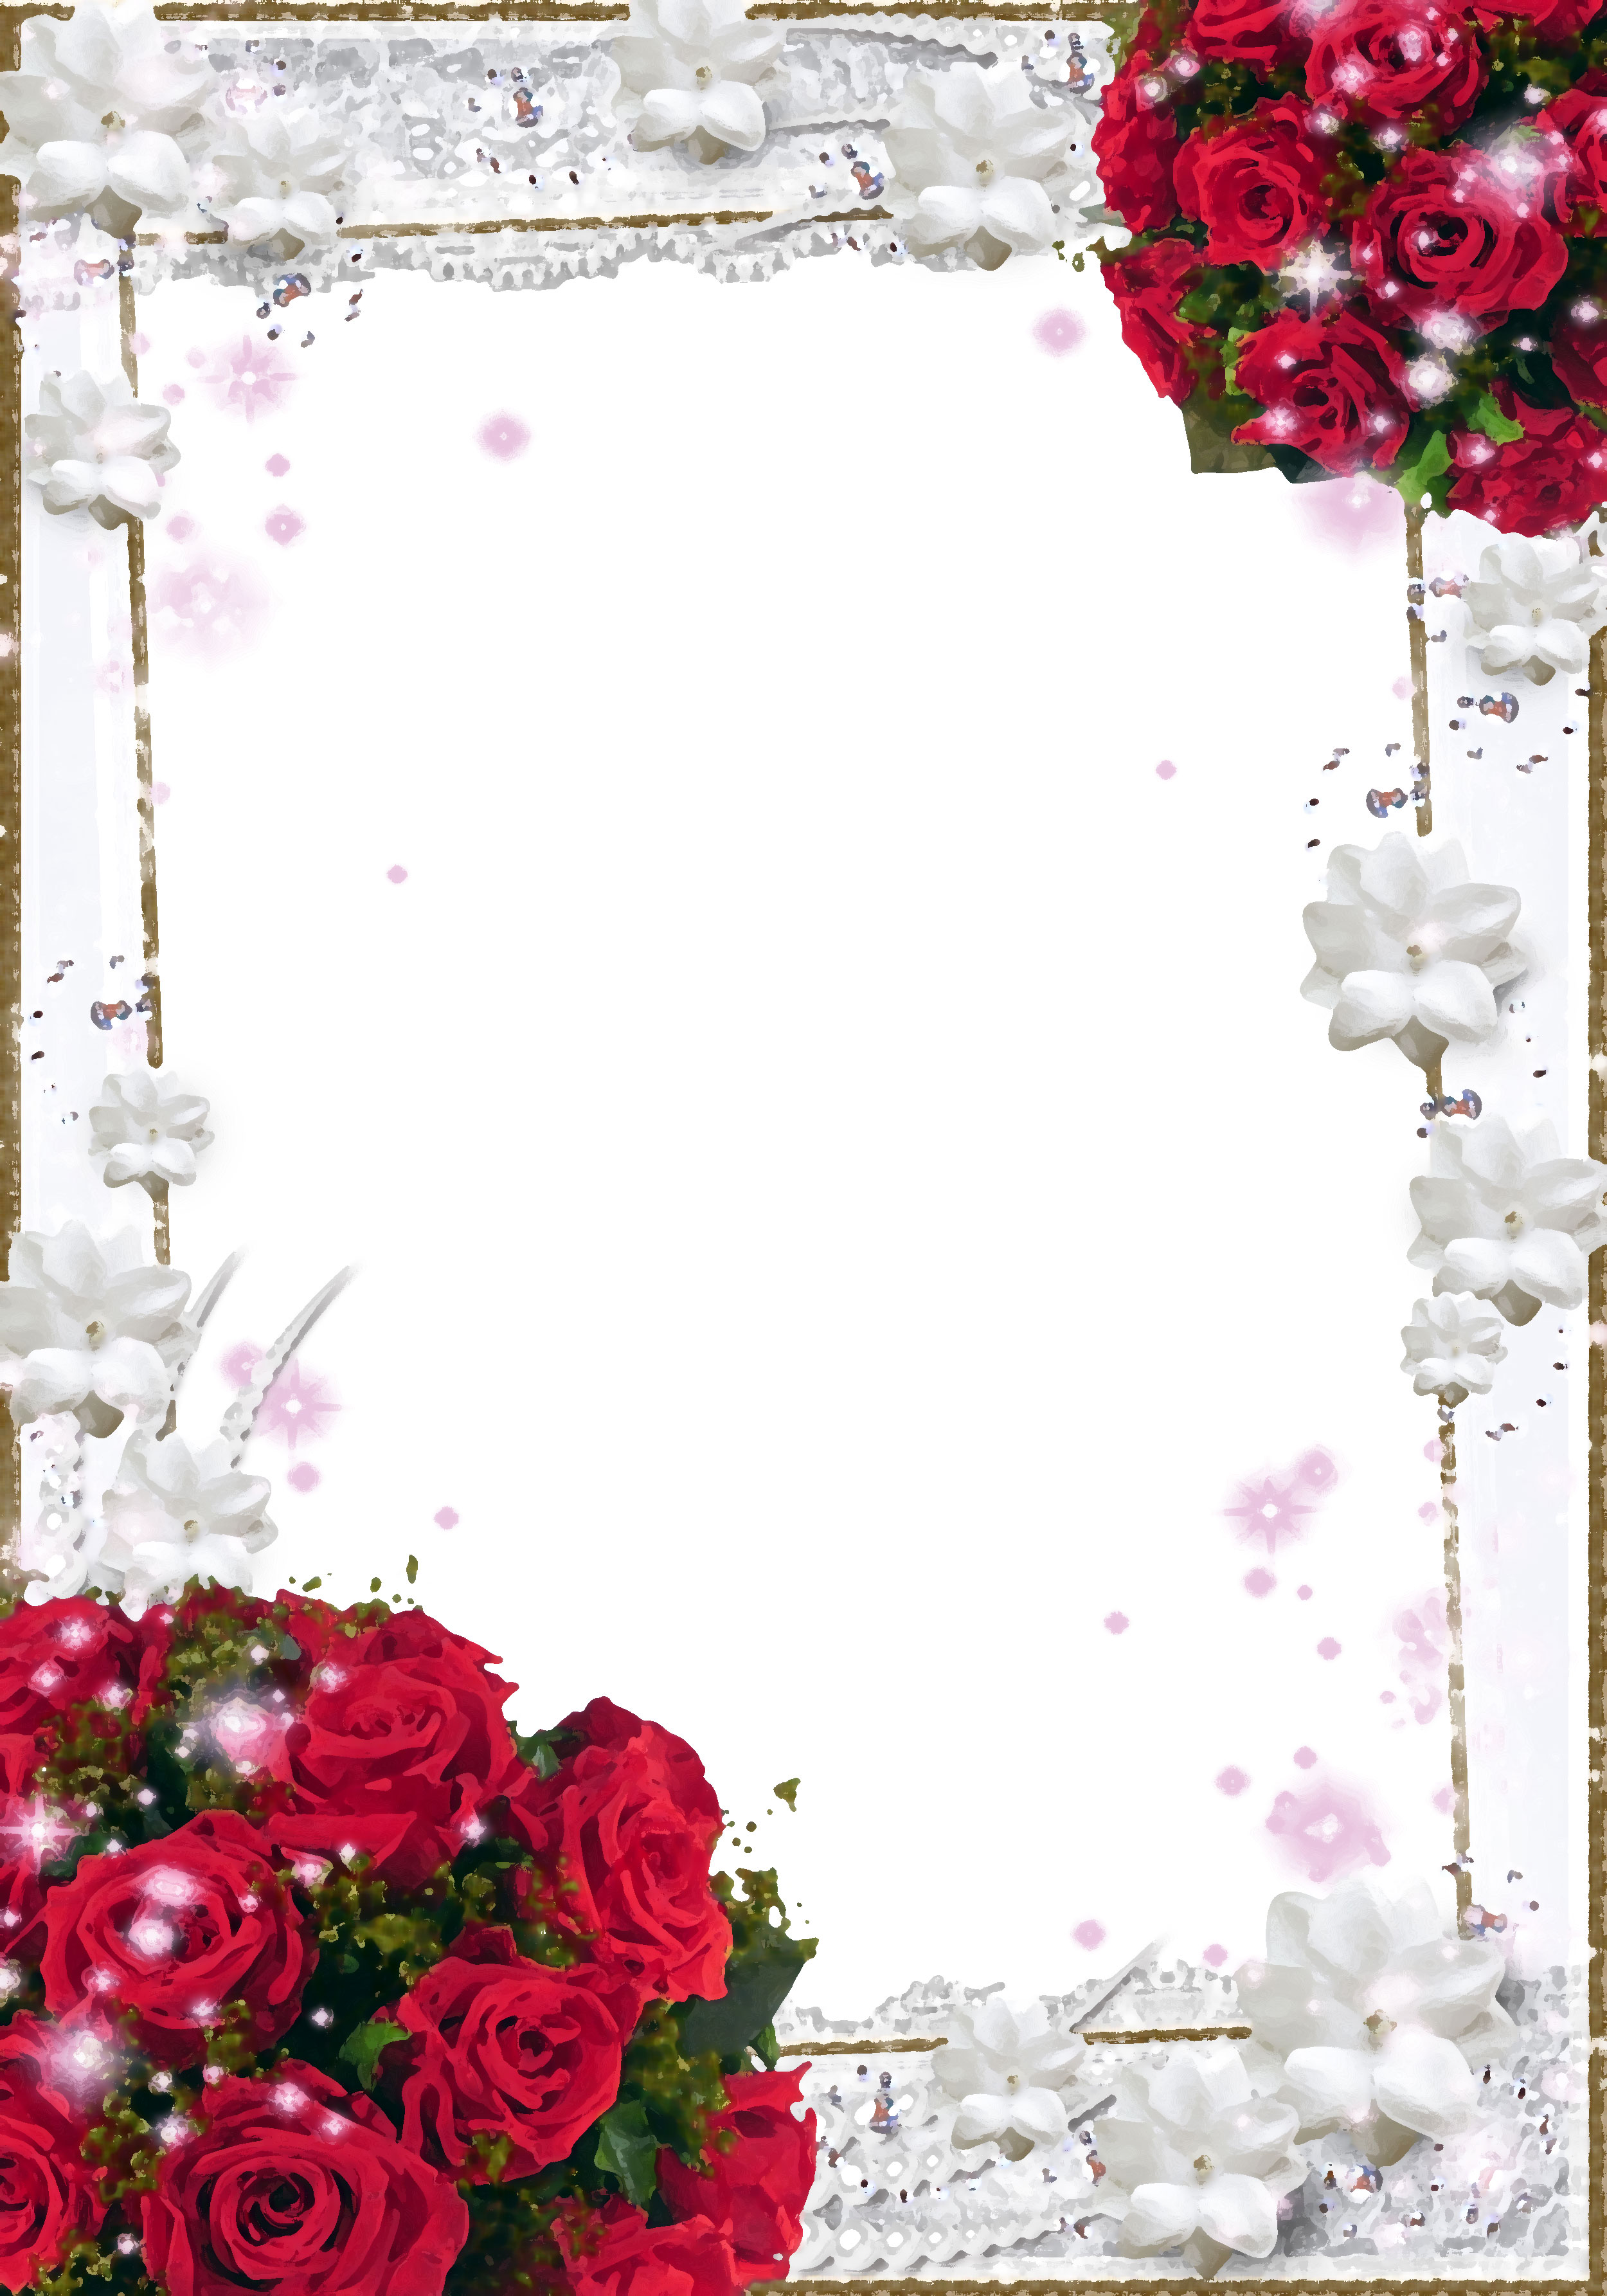 バラの画像 イラスト 壁紙 背景用 No 637 赤バラの束 真珠 白